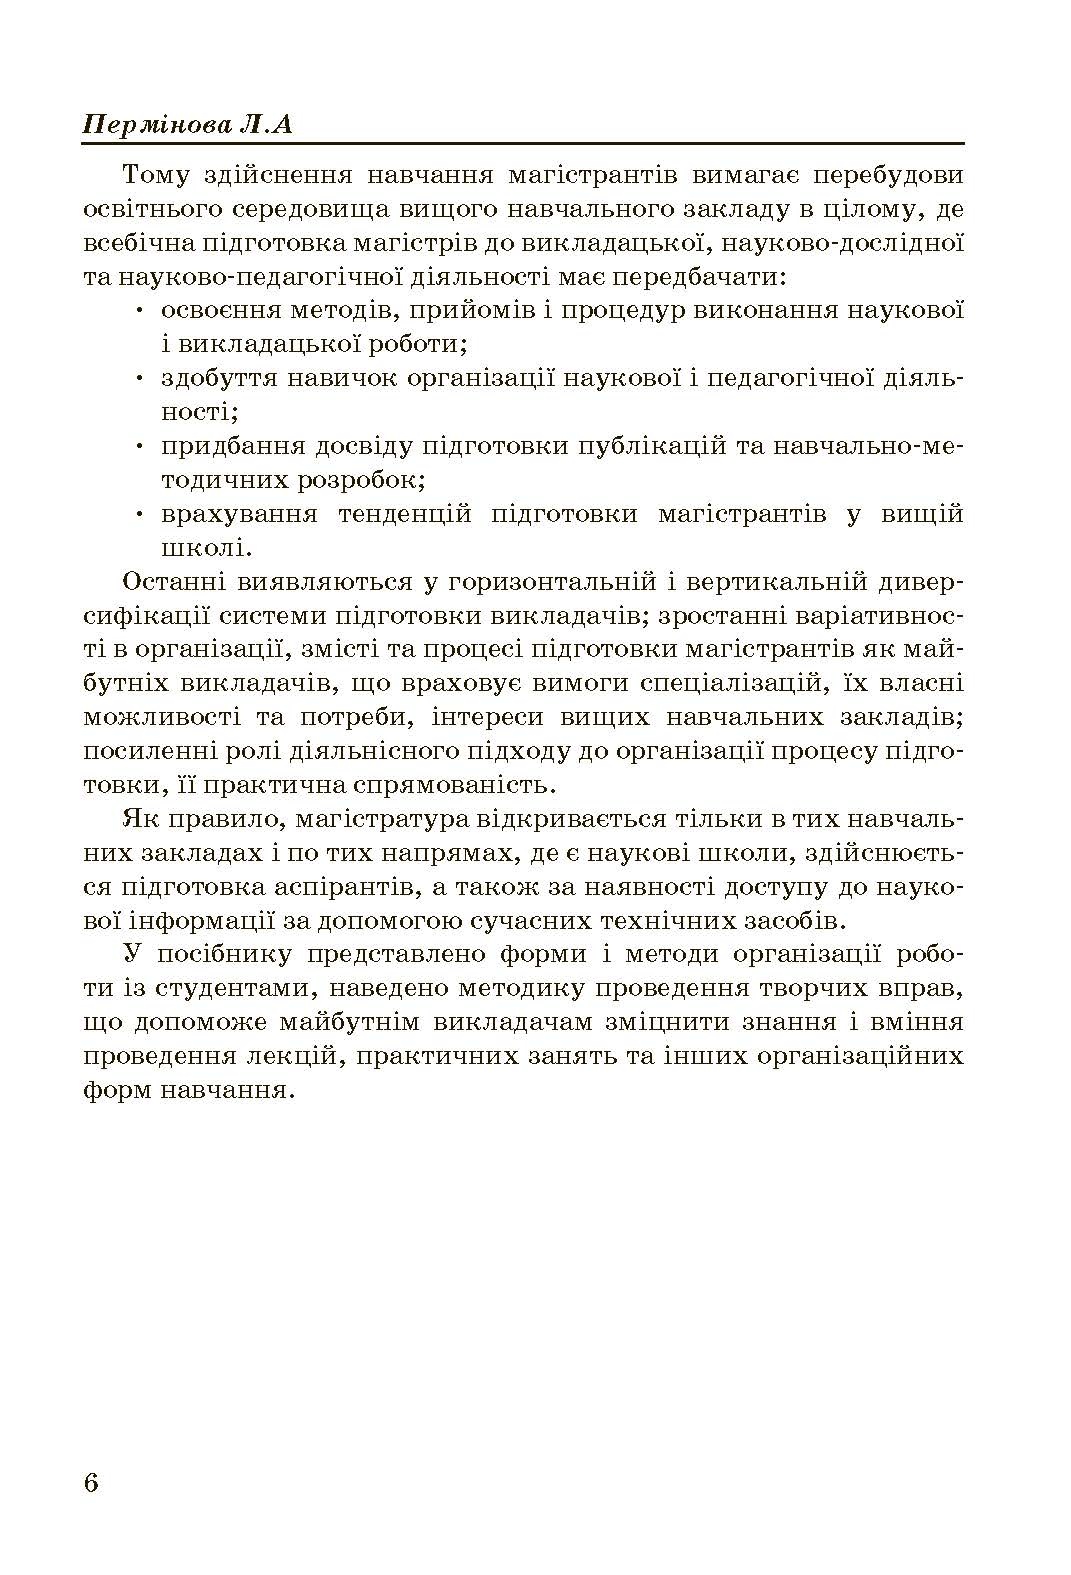 Асистенська практика: зміст, методи і форми організіції  (2019 год). Автор — Пермінова Л.А.. 